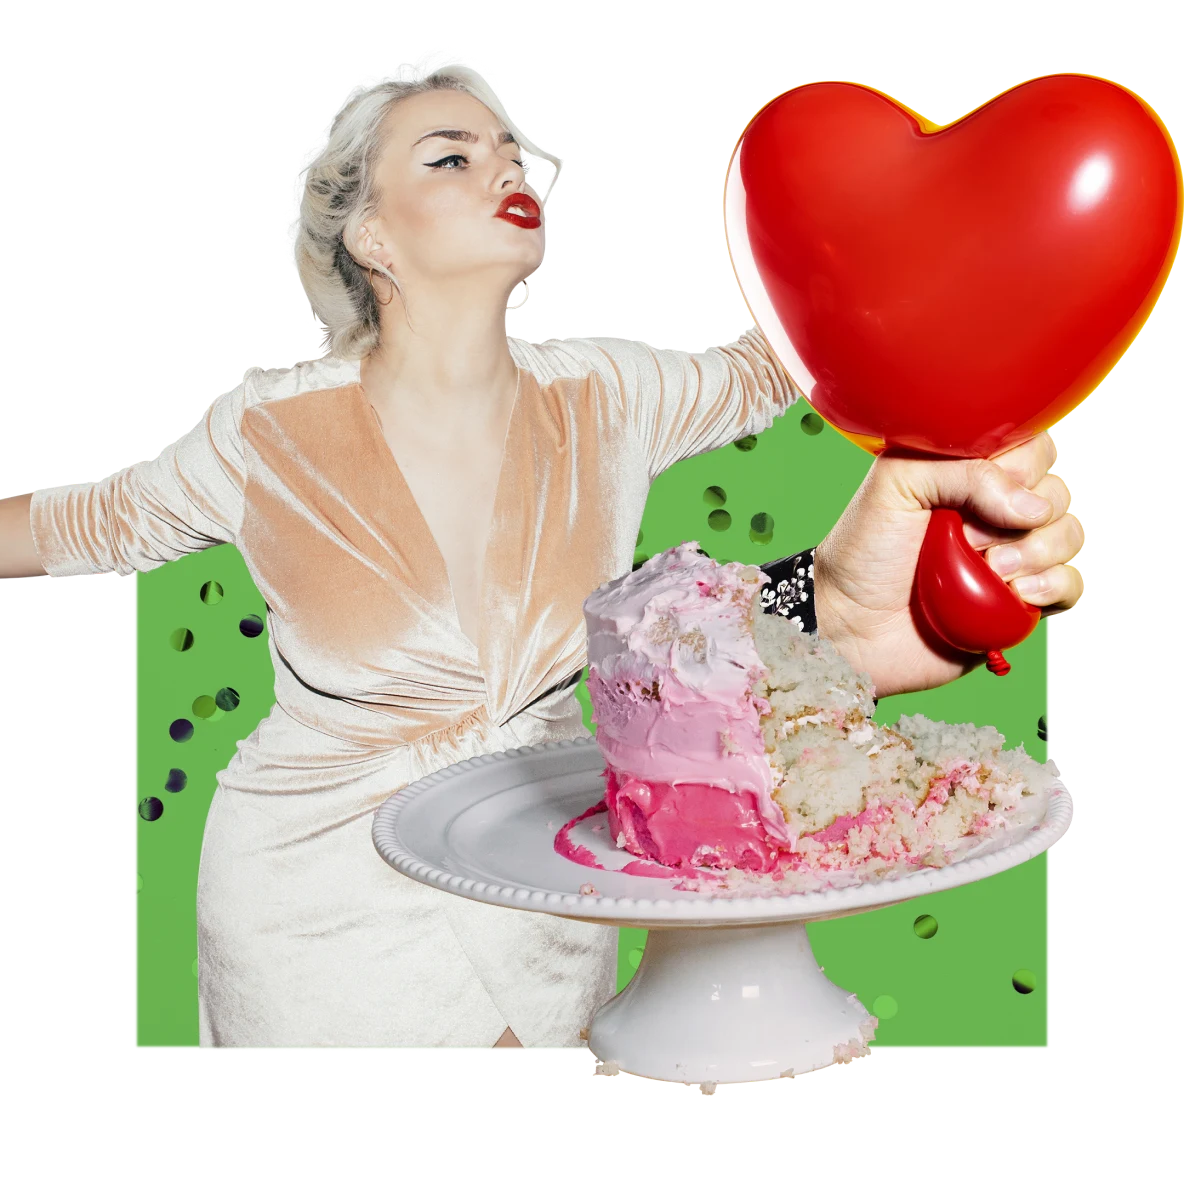 Collage con temática de fiesta. A la izquierda, baila una mujer de piel clara con cabello rubio, lápiz labial rojo brillante y vestido rosa. Hay un pastel rosa a medio comer sobre una bandeja blanca. Una mano de piel blanca aprieta la parte inferior de un globo con forma de corazón.